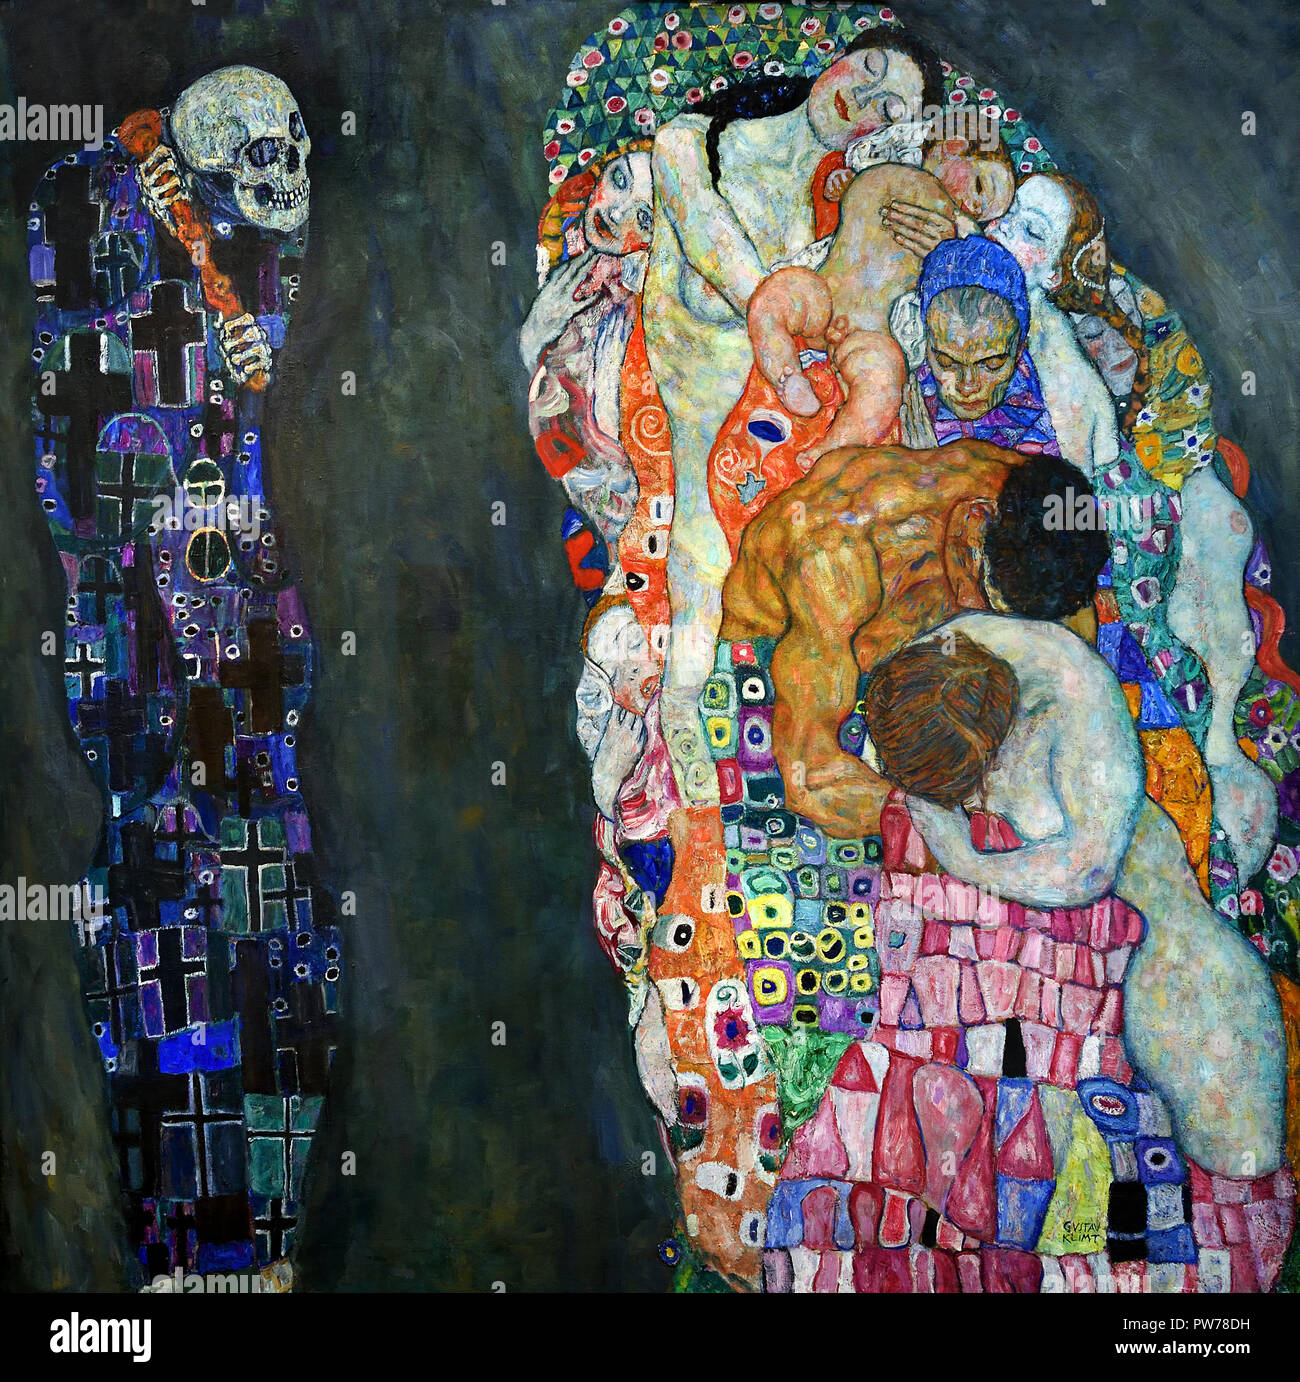 La morte e la vita 1910/1915, Gustav Klimt 1862 - 1918 austriaco pittore simbolista del movimento della Secessione Viennese Austria Foto Stock